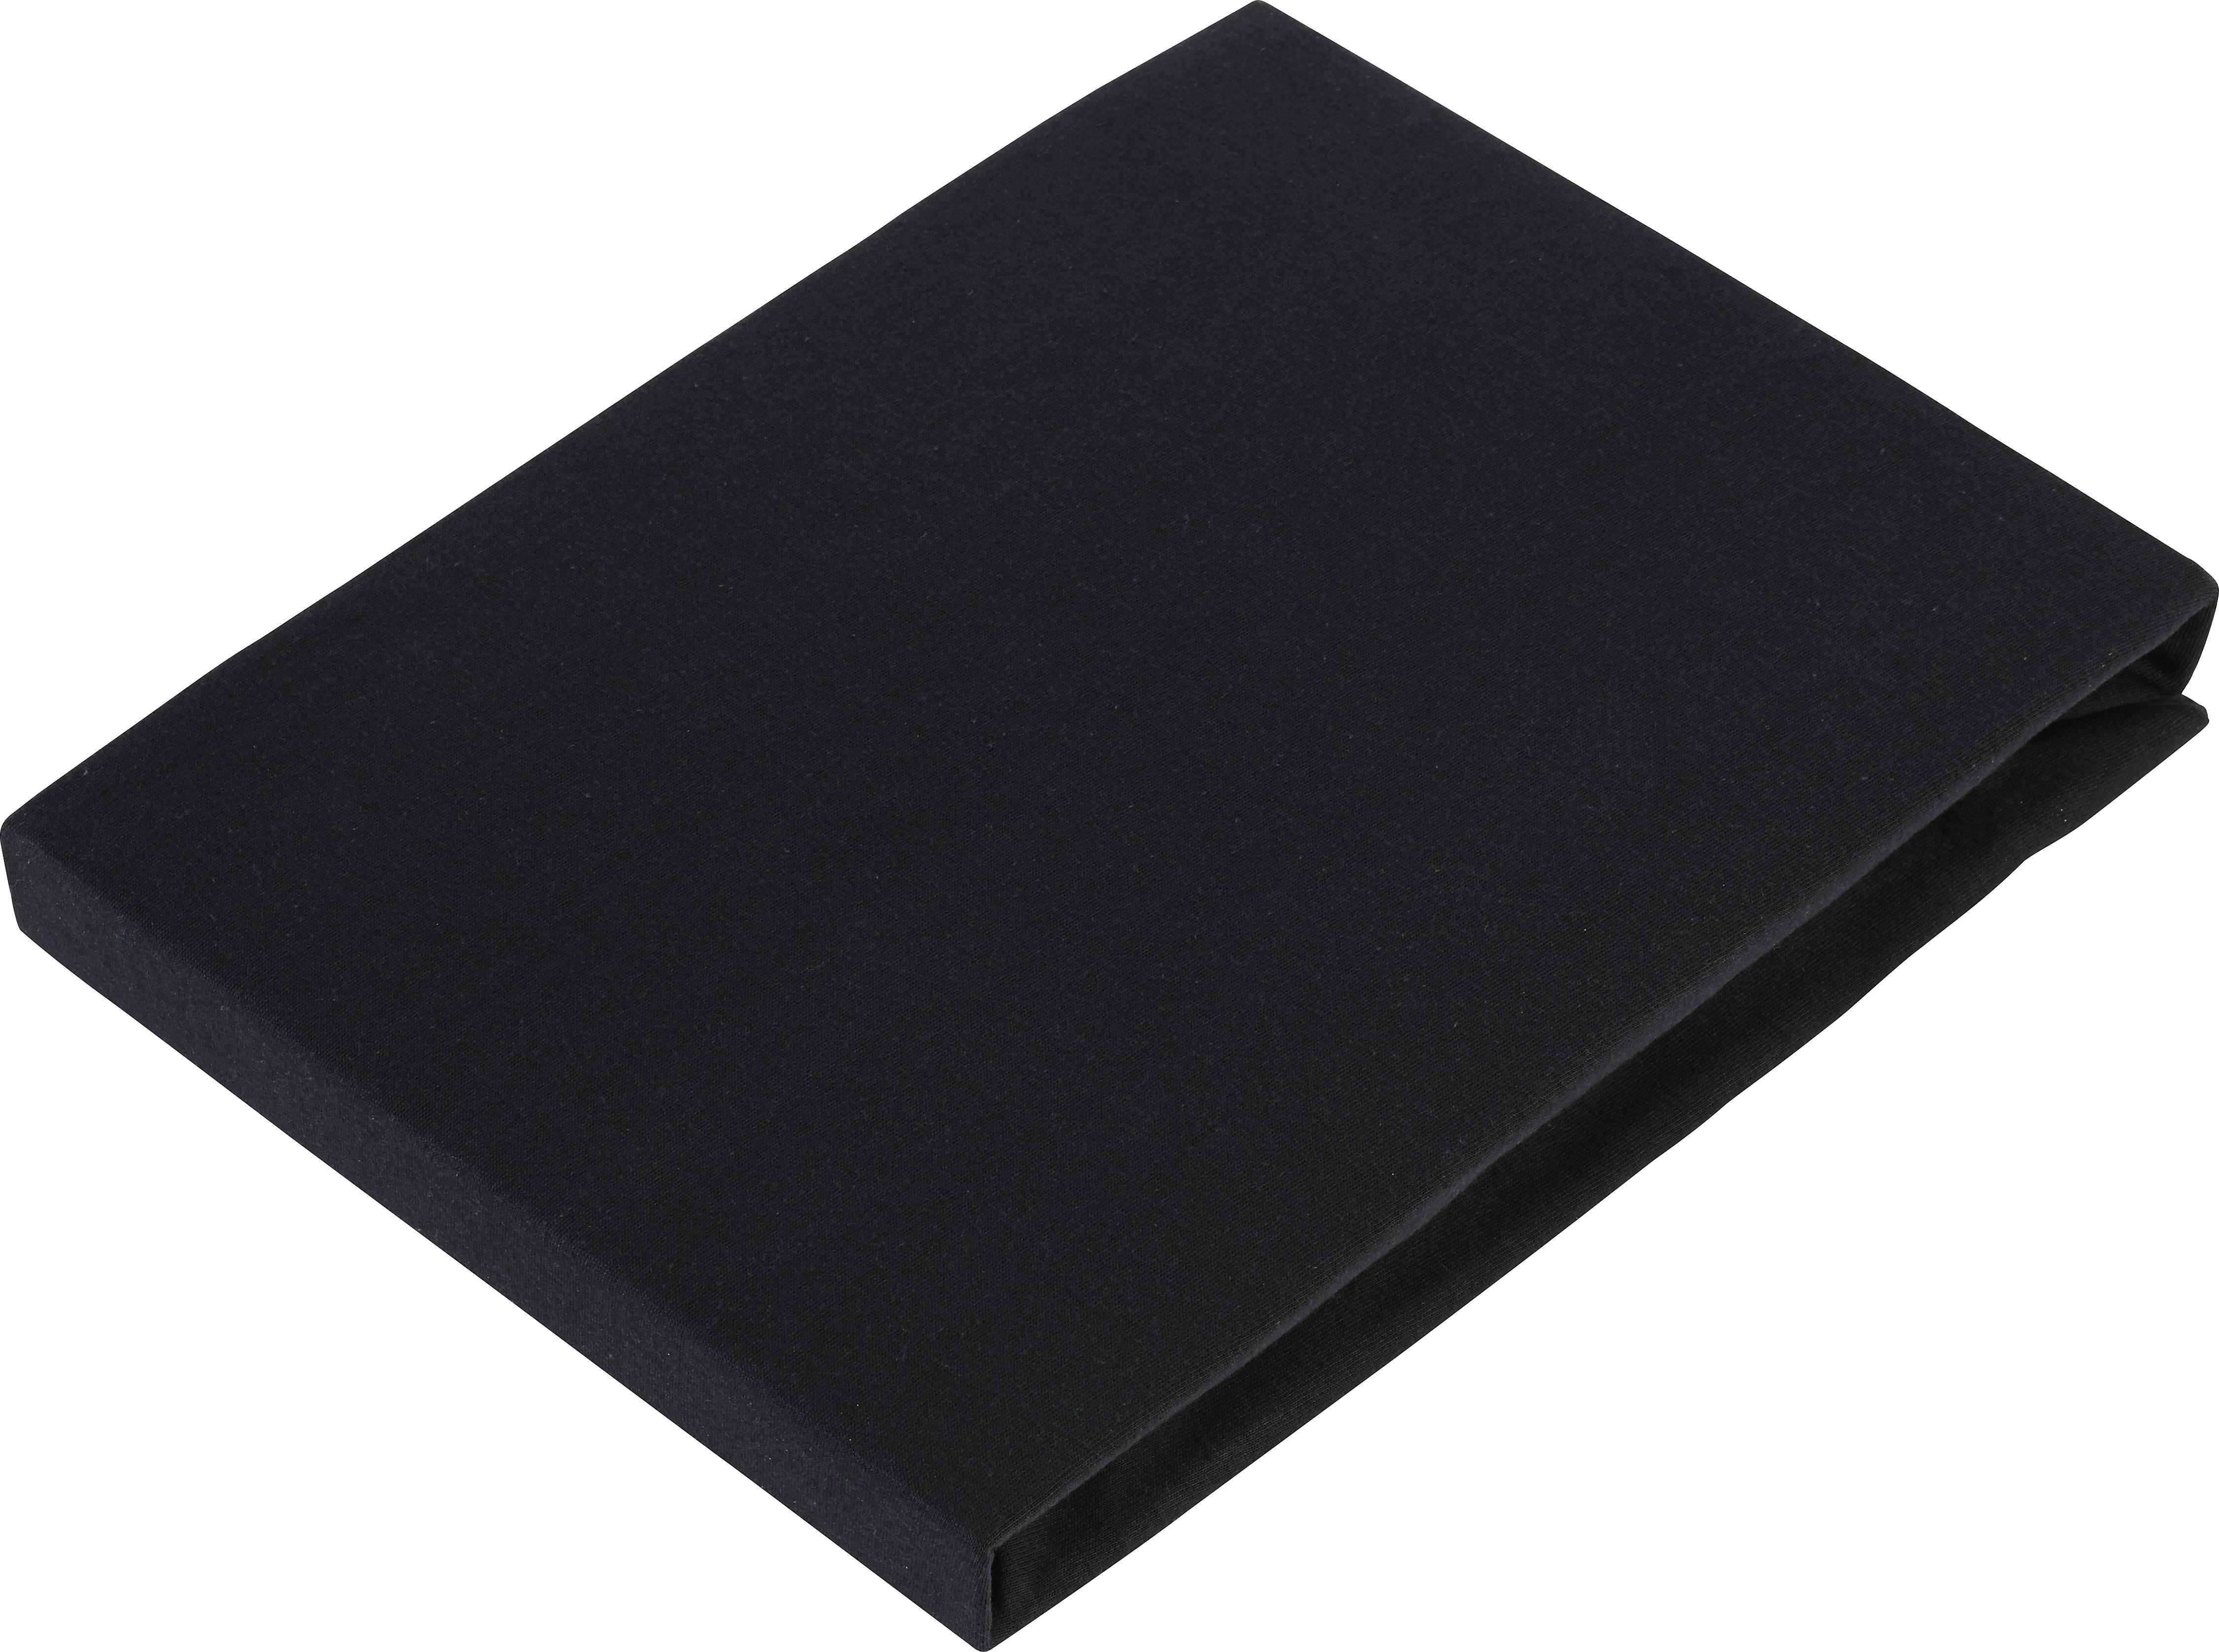 Elastické Prostěradlo Basic, 100/200 Cm - černá, textil (100/200cm) - Modern Living